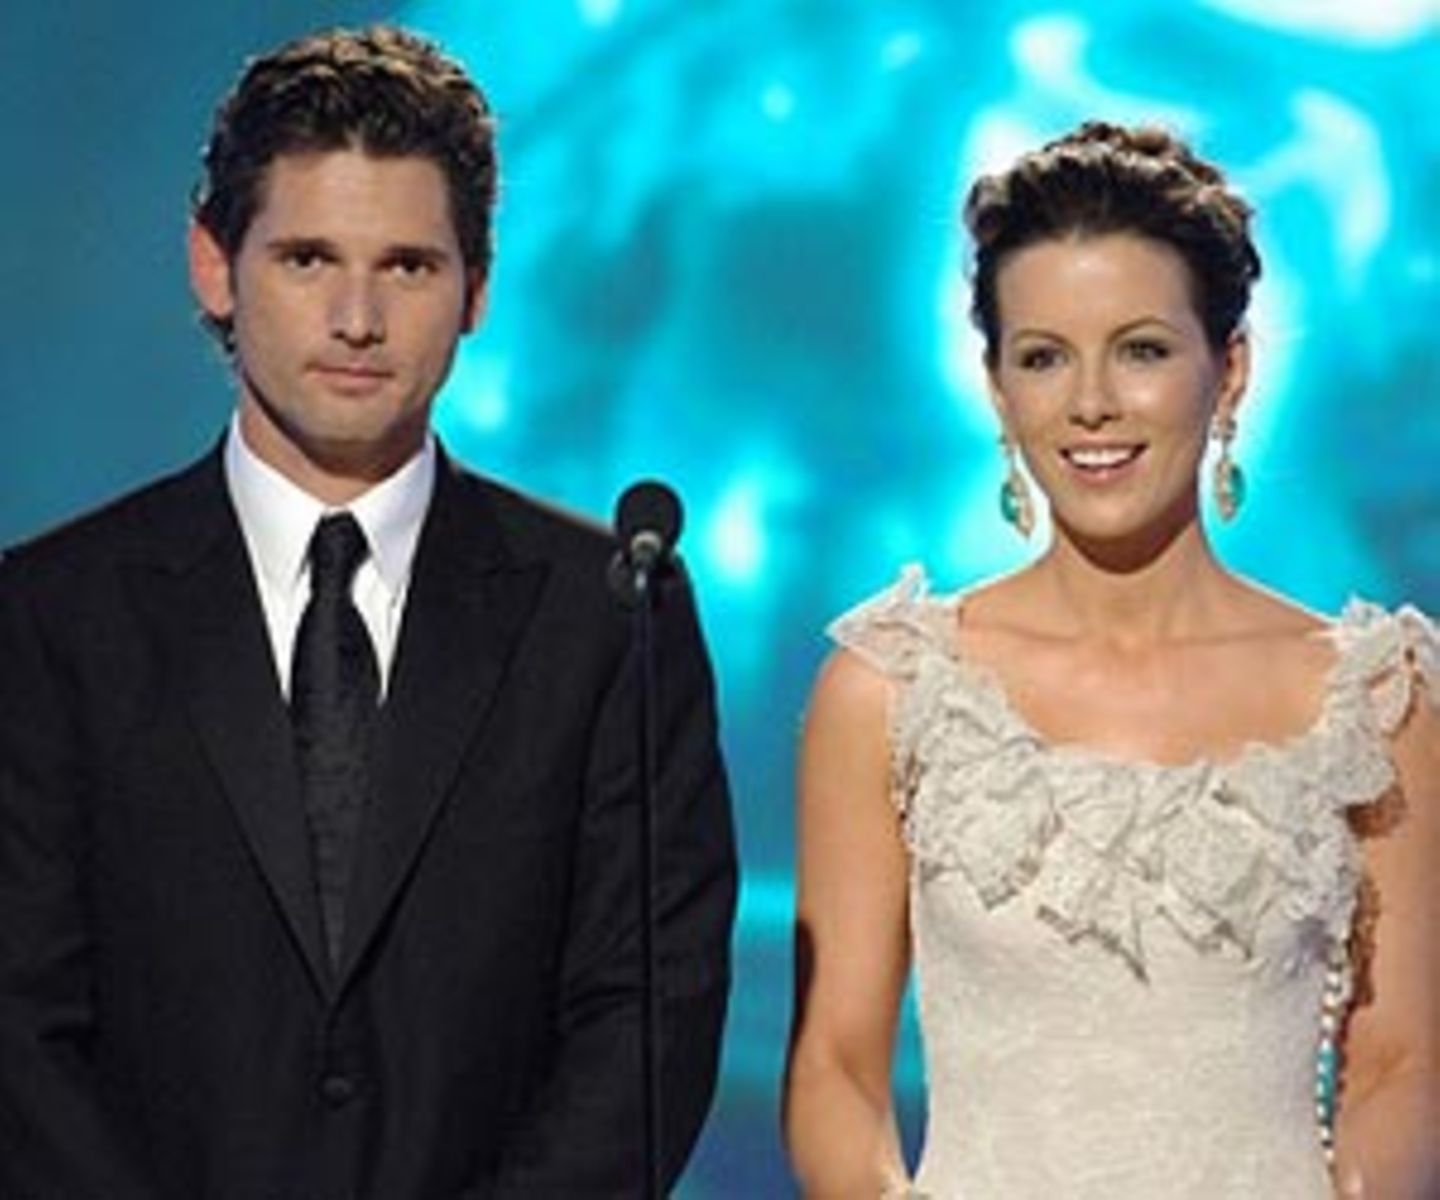 Eric Bana und Kate Beckinsale präsentieren die Kategorie "Bester Darsteller in einem Mehrteiler oder Fernsehfilm".